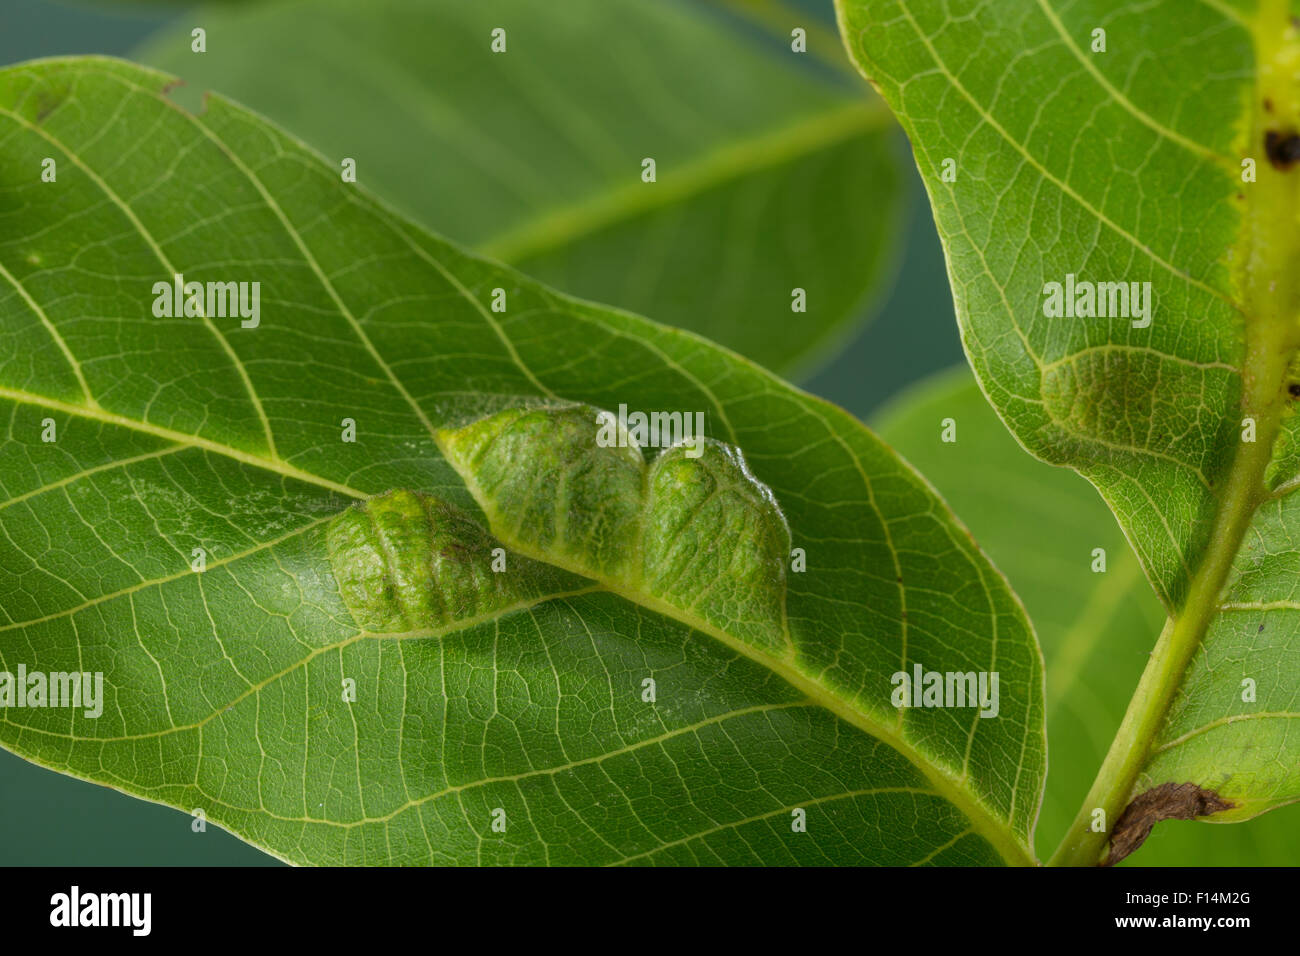 Walnut Erineum Mite, Walnut Leaf Gall Mite, walnut blister mite, Walnuss-Gallmilbe, Walnuß, Filzgallmilbe, Eriophyes erineus Stock Photo